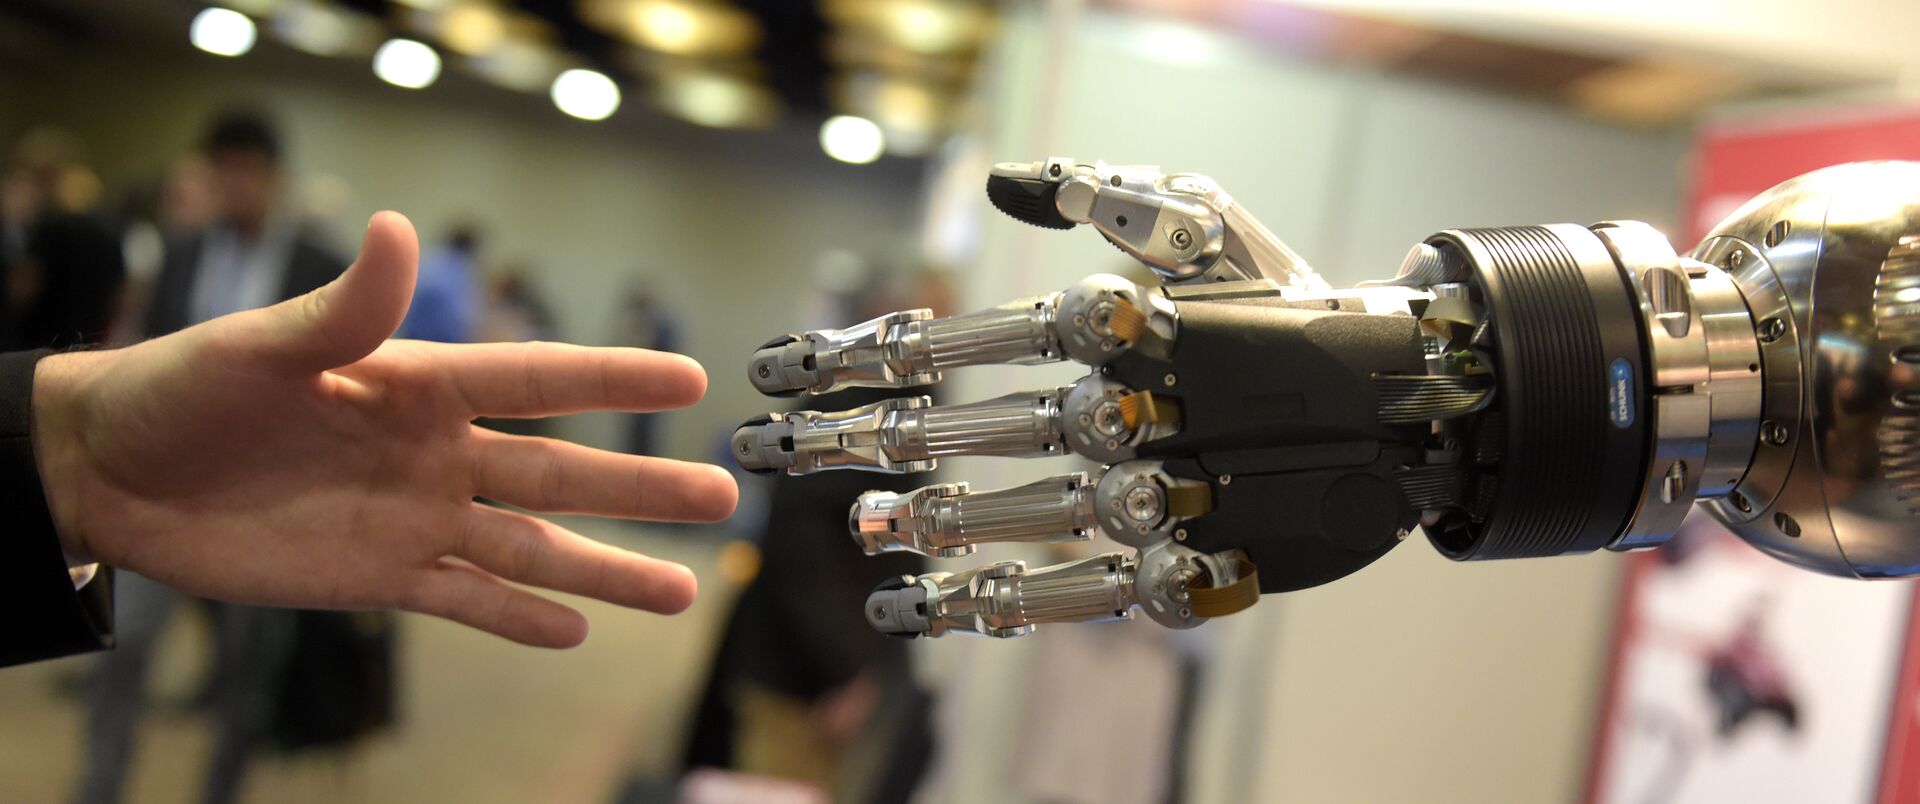 Robótica e IA: como Brasil pode ser protagonista no avanço tecnológico do futuro? - Sputnik Brasil, 1920, 21.07.2021